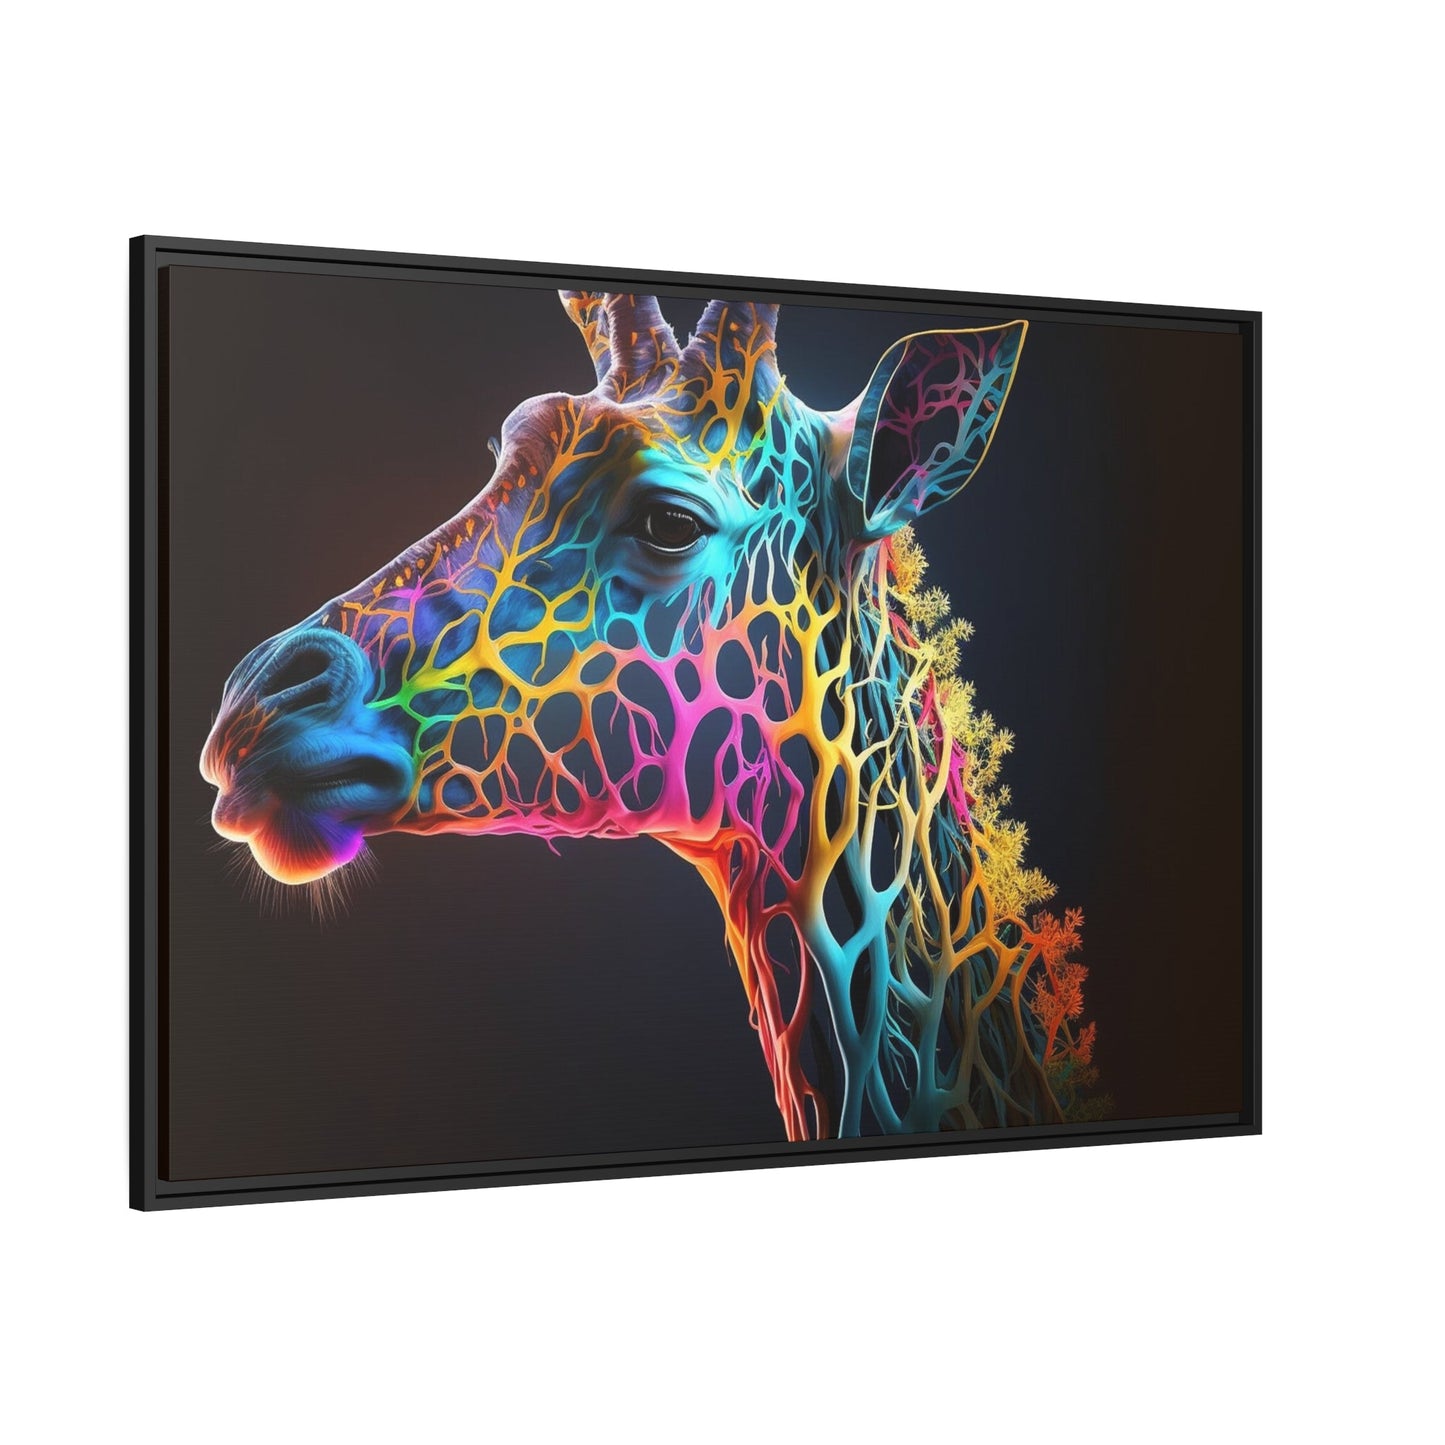 Giraffe Portrait: Stunning Art on a Framed Canvas Featuring a Close-Up of a Giraffe